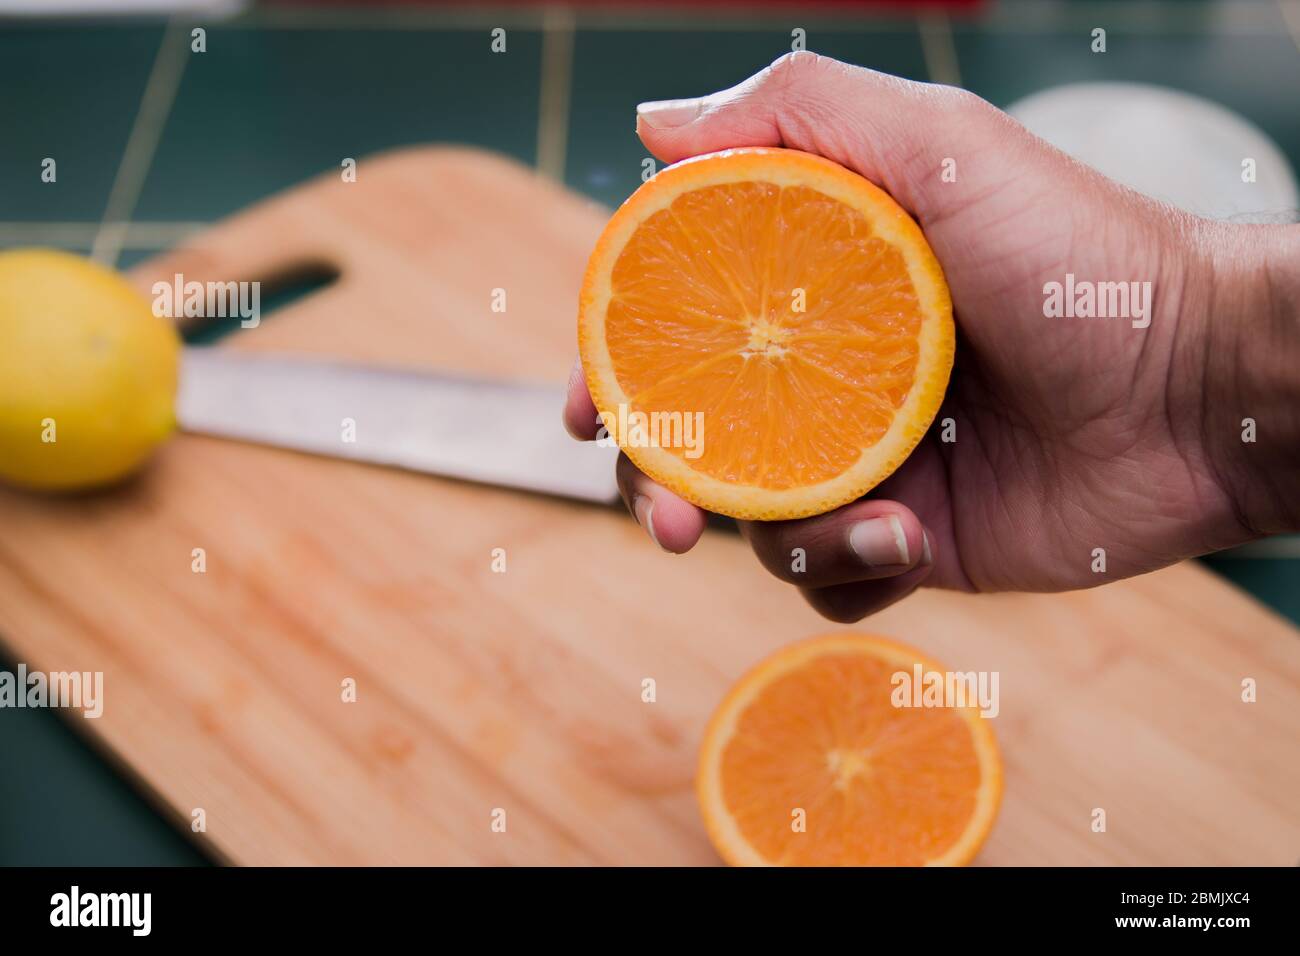 Arancio luminoso, appena tagliato, arancione che sta per essere schiacciato con una mano dell'uomo. Tagliere di legno, coltello e un limone sullo sfondo. Foto Stock